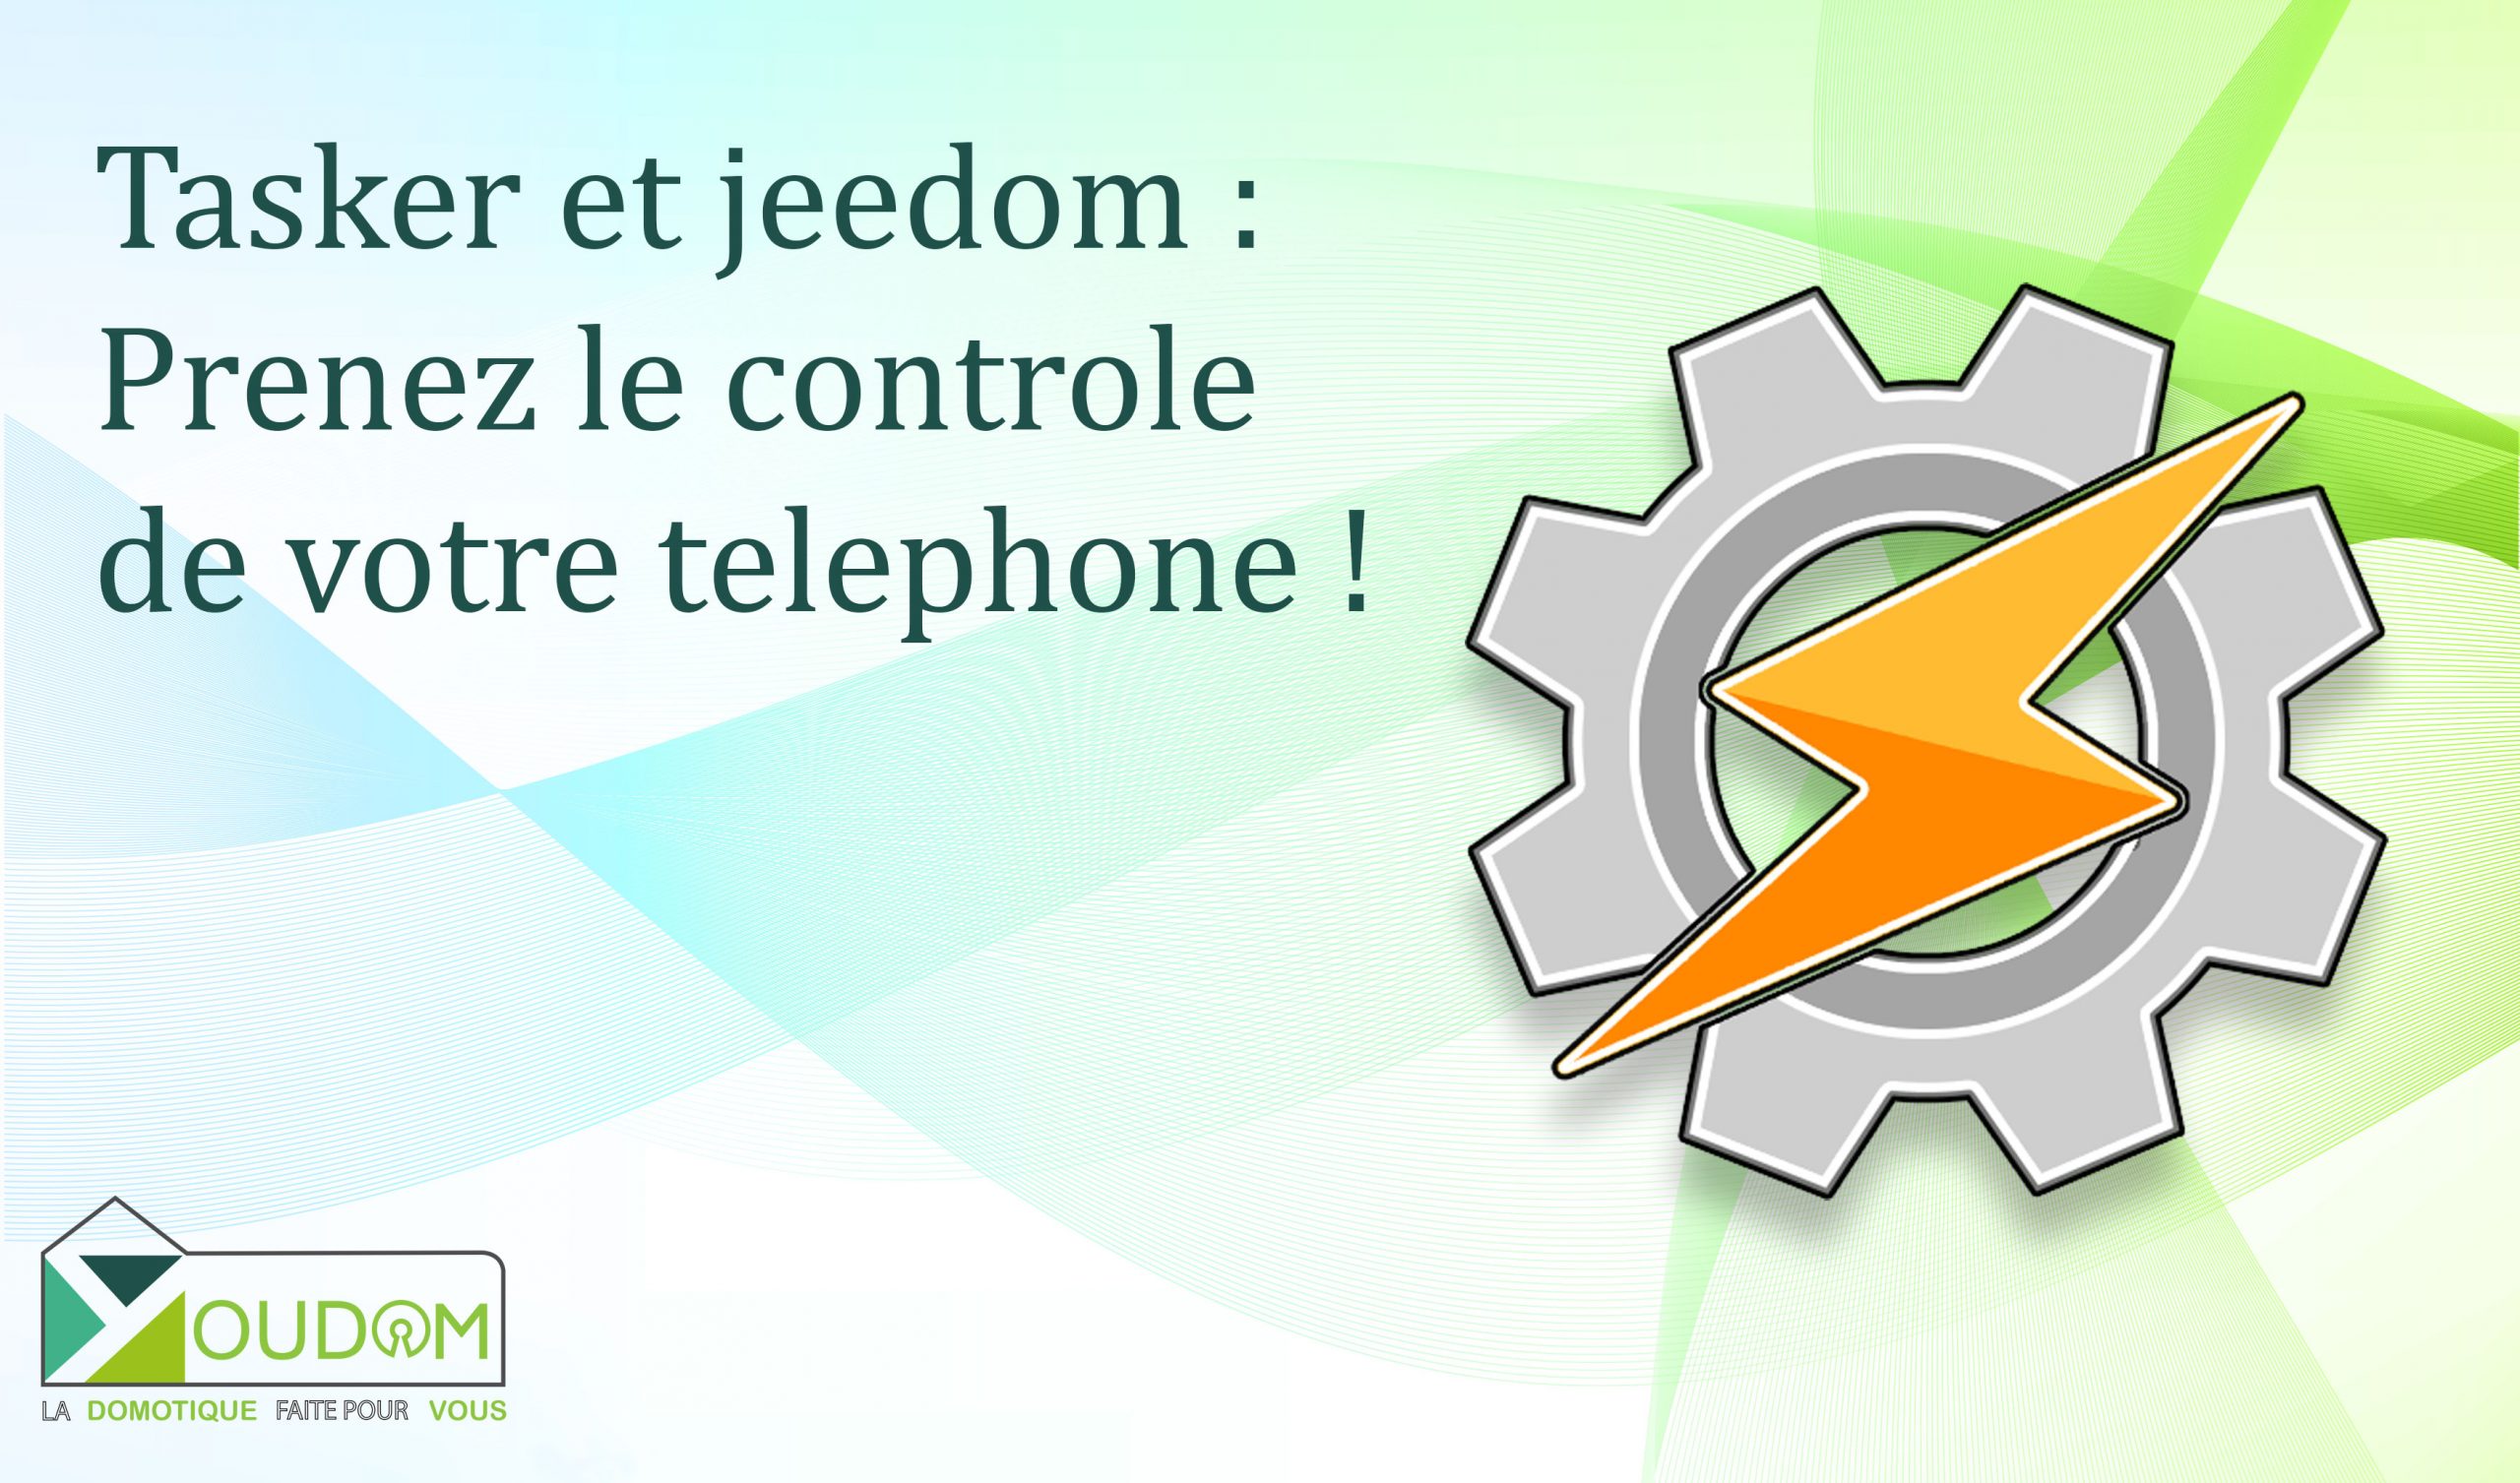 Lire la suite à propos de l’article Tasker et jeedom : Prenez le controle de votre telephone !